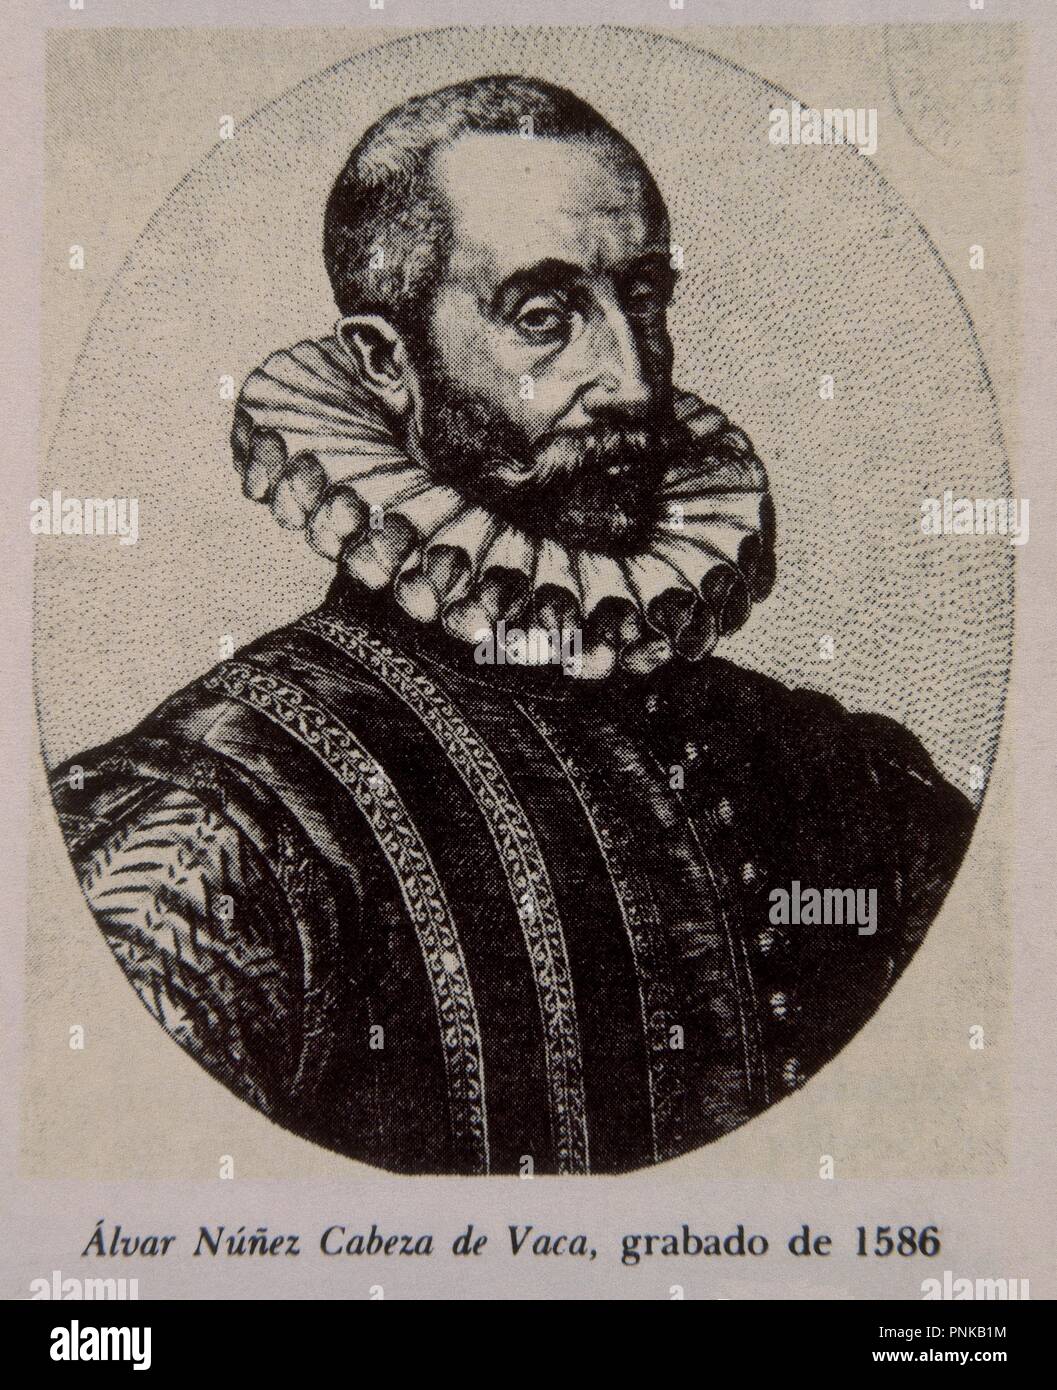 ALVAR NUÑEZ CABEZA DE VACA - GRABADO 1586 -DESCUBRIDOR Y CONQUISTADOR. Stock Photo